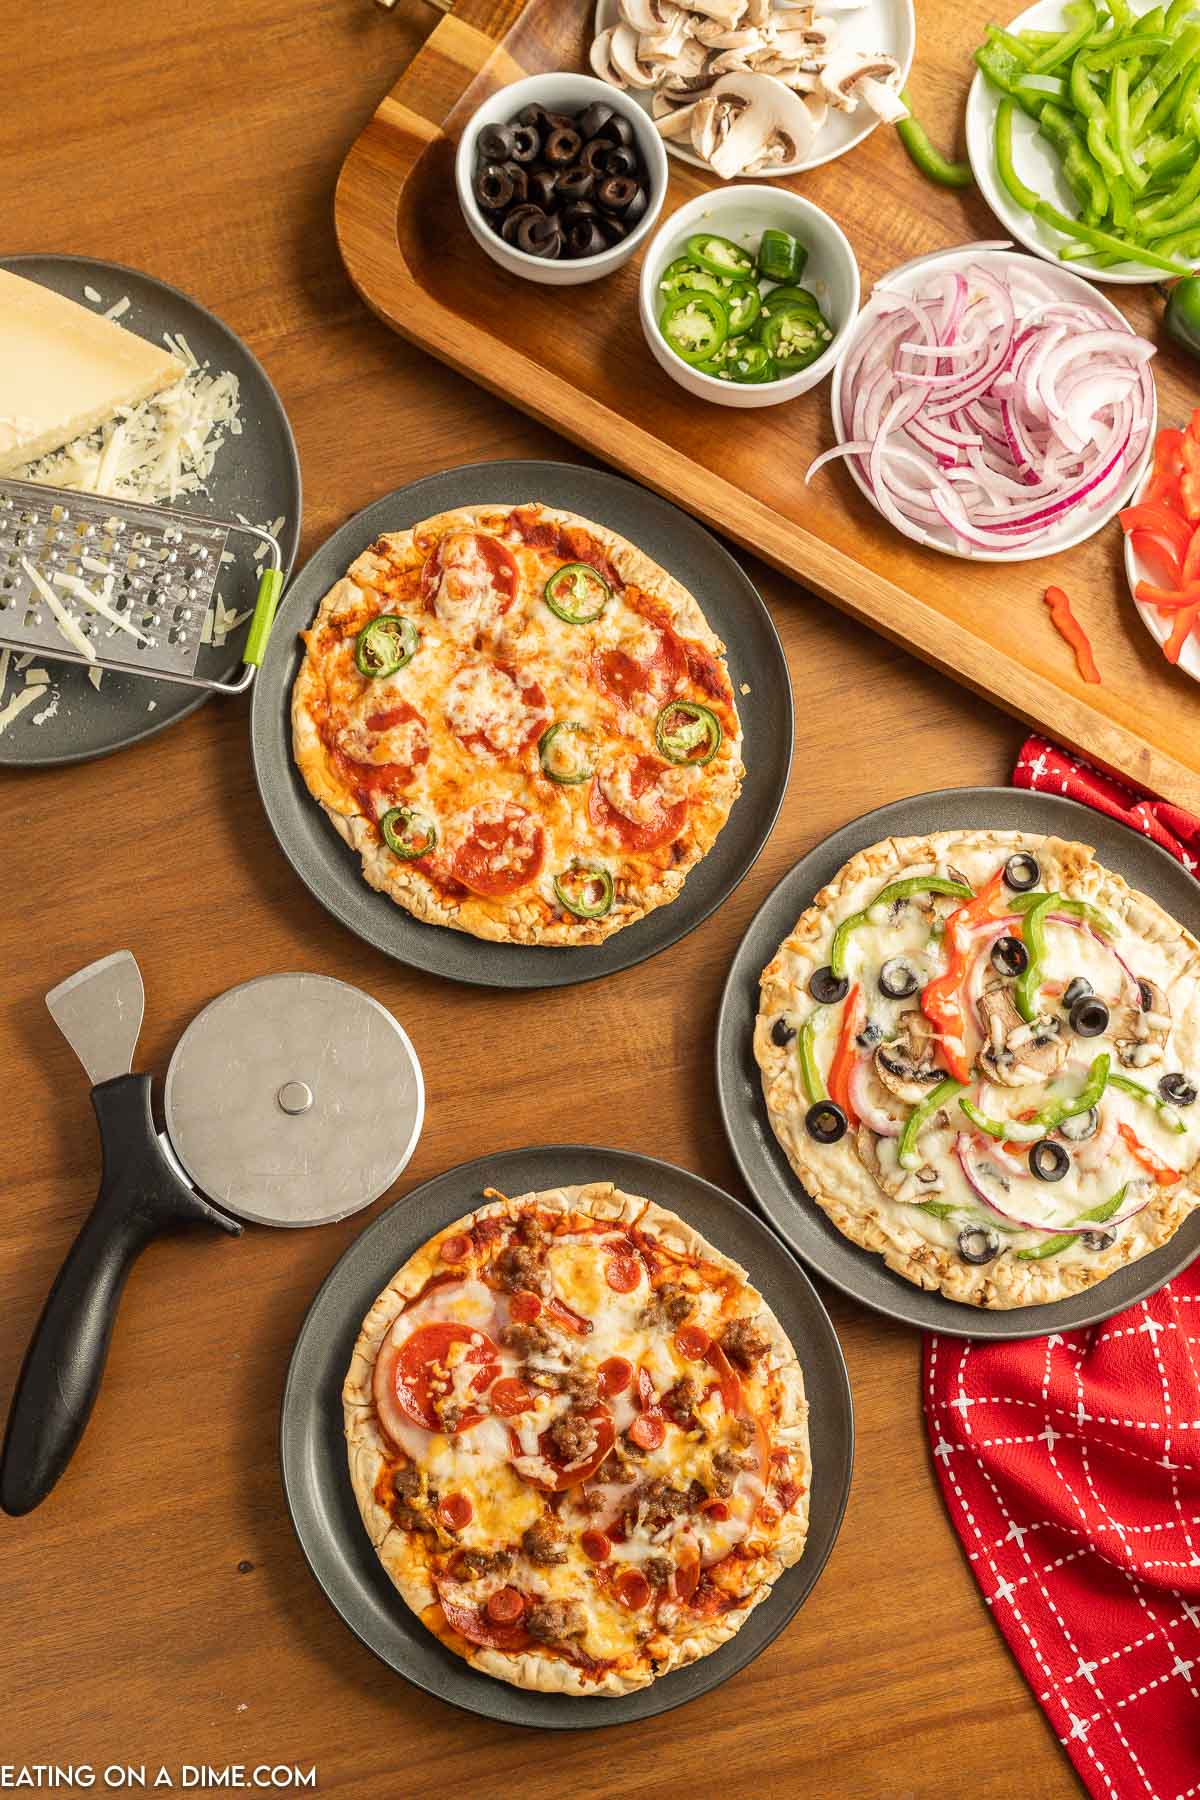 https://www.eatingonadime.com/wp-content/uploads/2023/02/how-to-make-a-pizza-bar-9.jpg